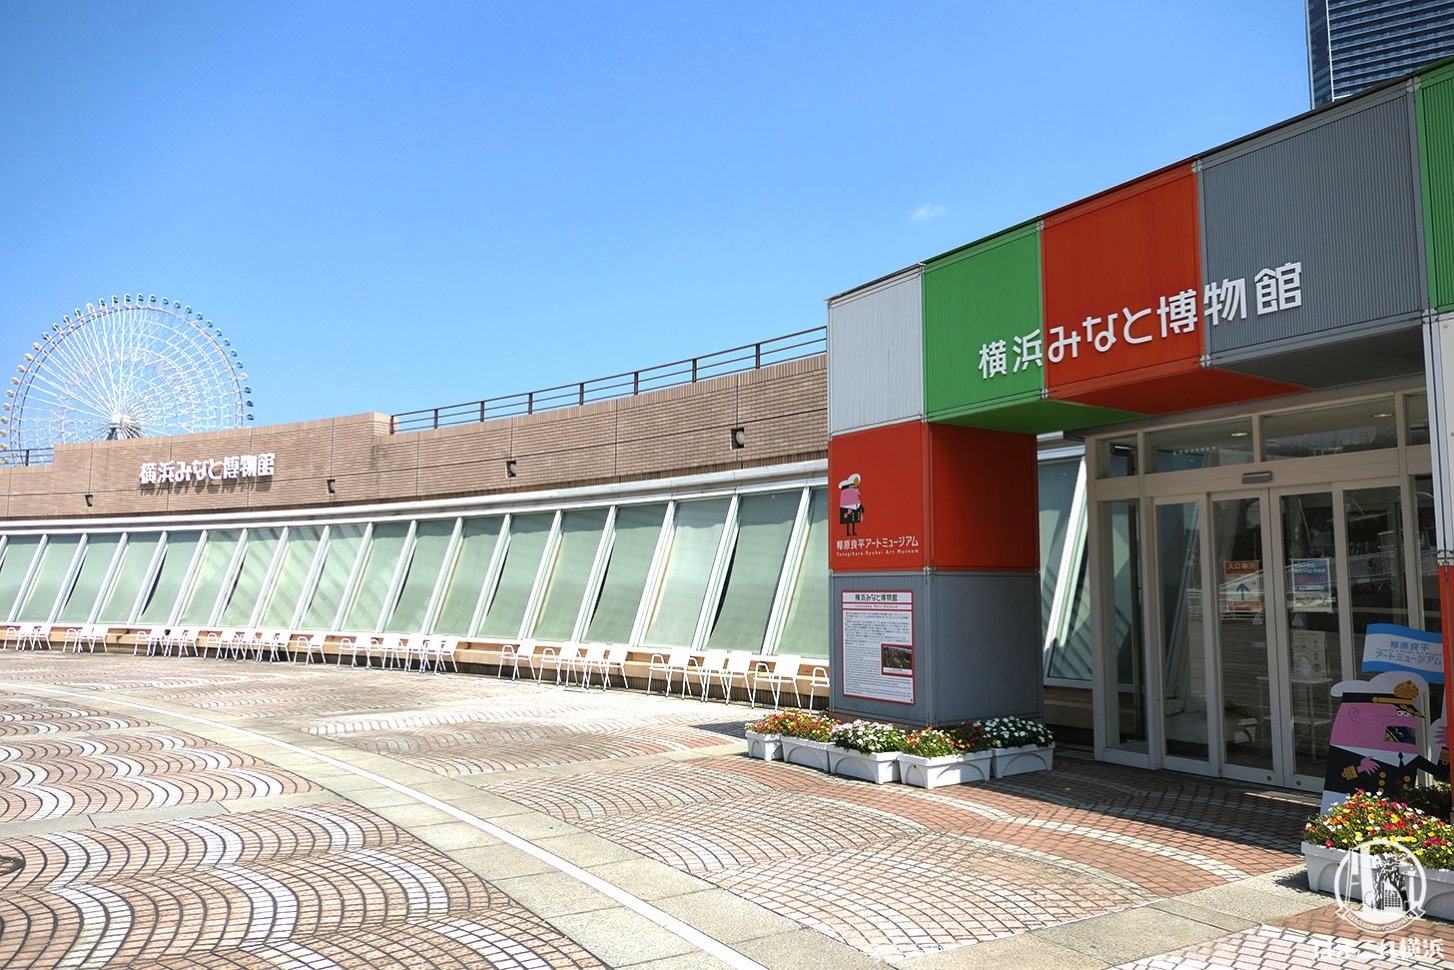 横浜みなと博物館は横浜港の歴史満載！柳原良平アートミュージアムも観光